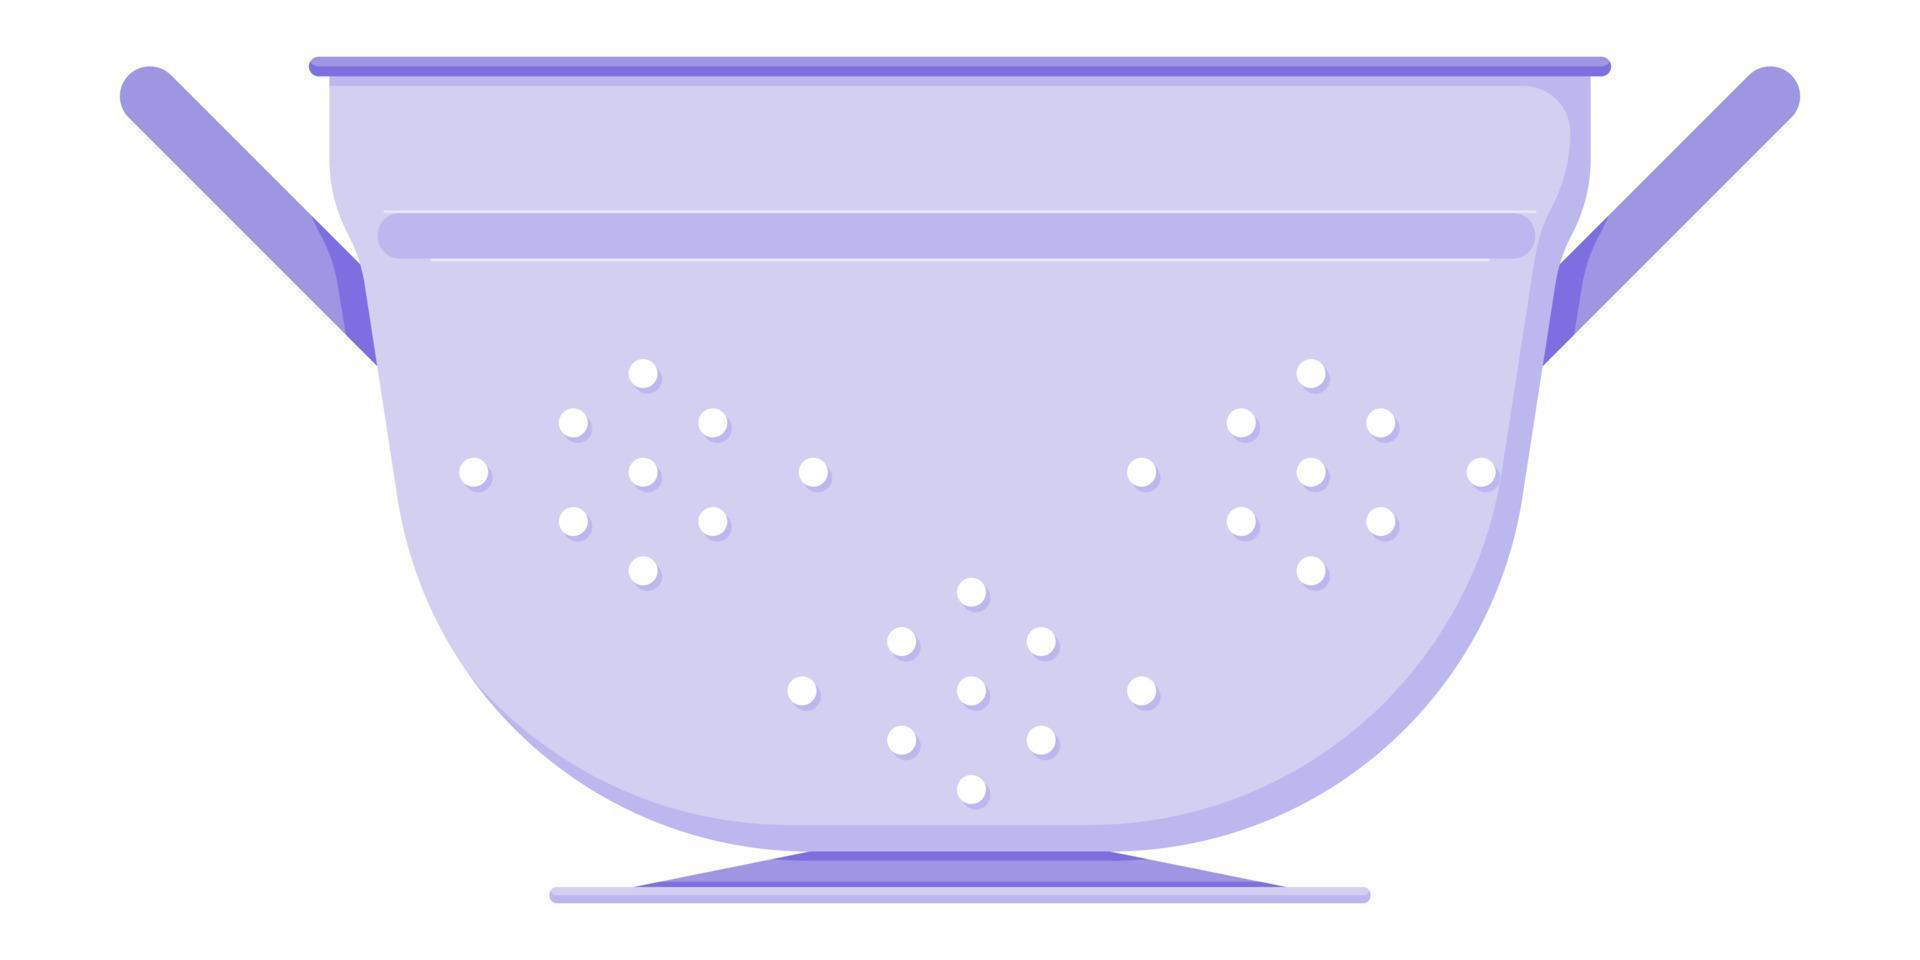 Paars vergiet met handvatten voor het aftappen van vloeistof uit een pan in een vlakke stijl geïsoleerd op een witte achtergrond vector